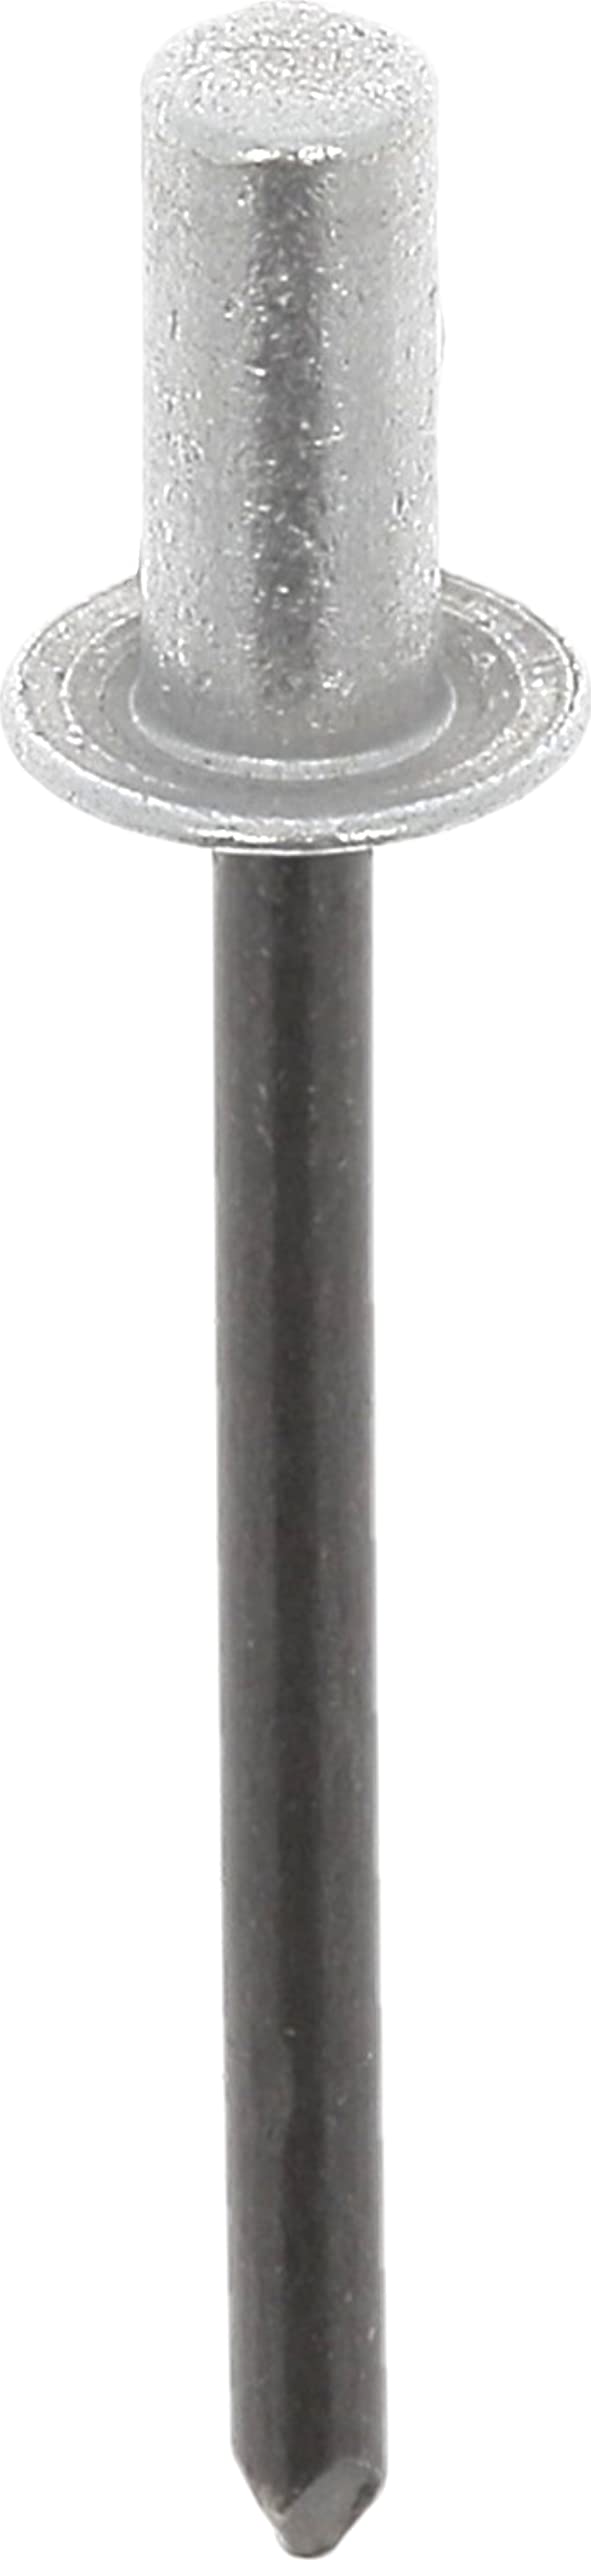 RESTAGRAF 4154 Niete, wasserdicht, Grau, 6 bis 7,5 mm x 12,5 mm von Restagraf